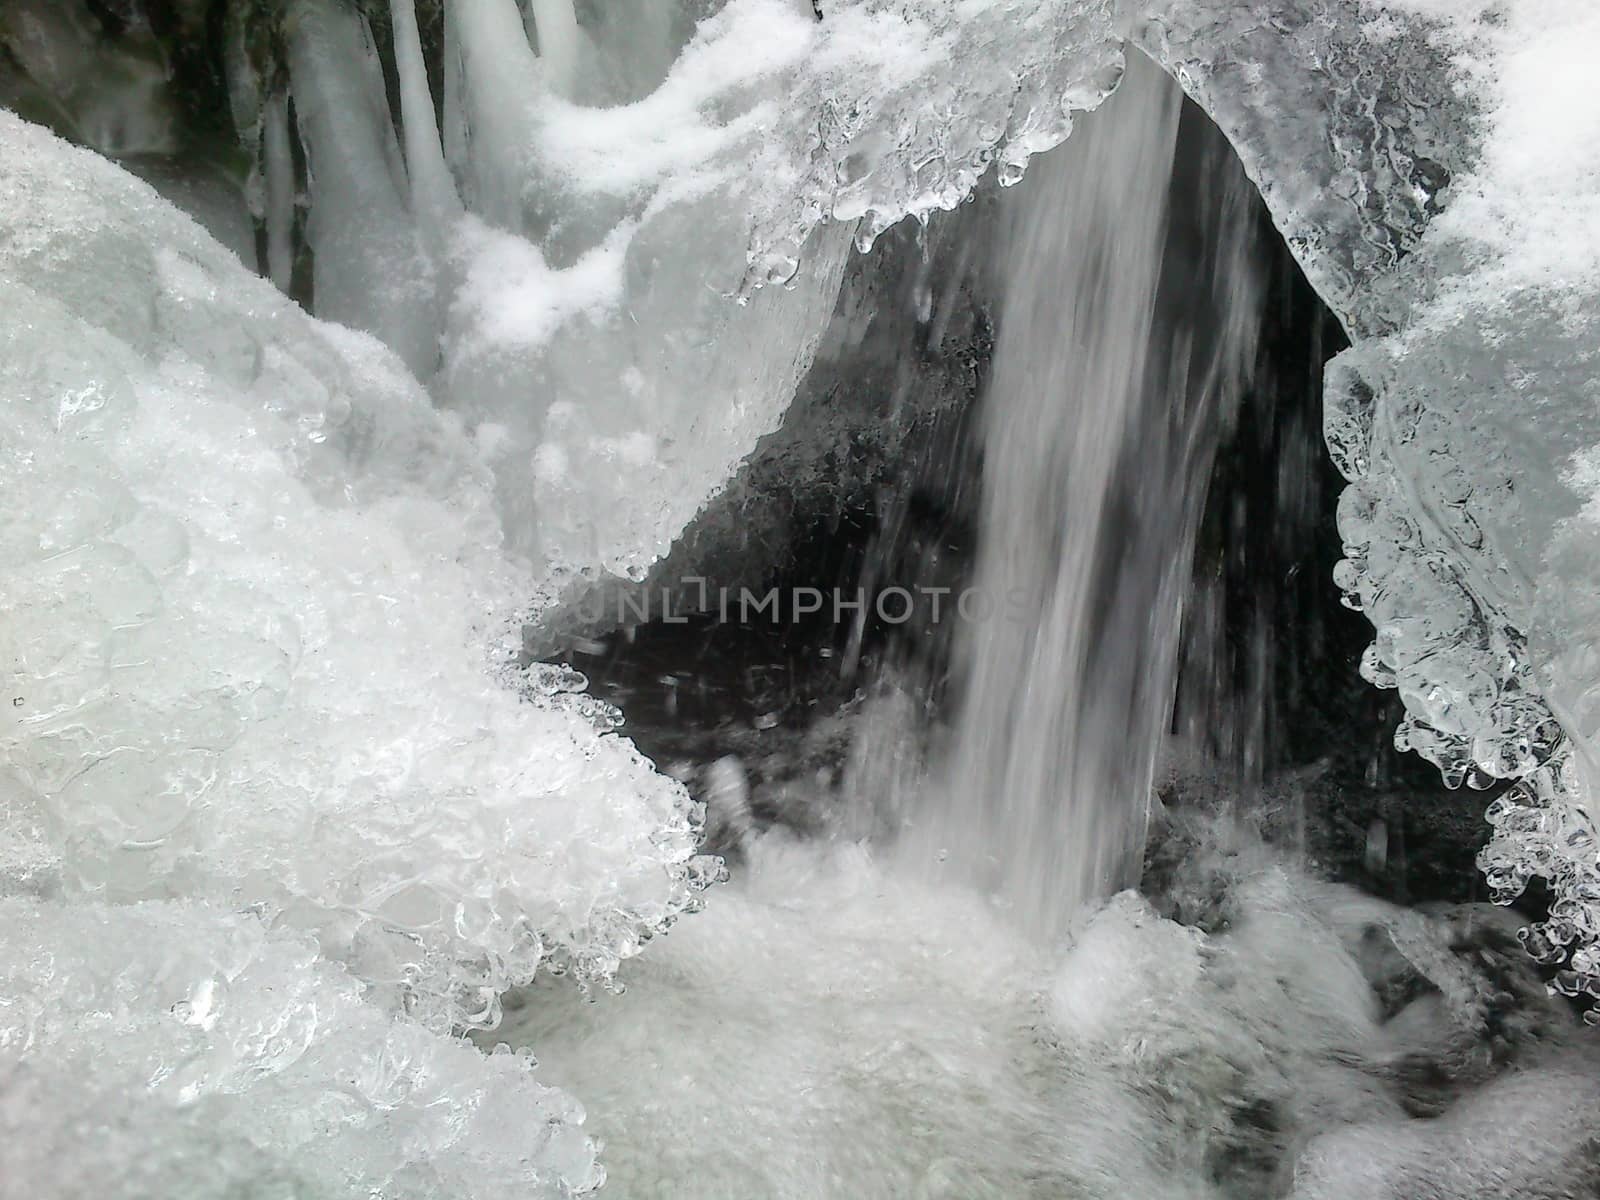 Winter ice scene from bohemian paradise by jakub2k